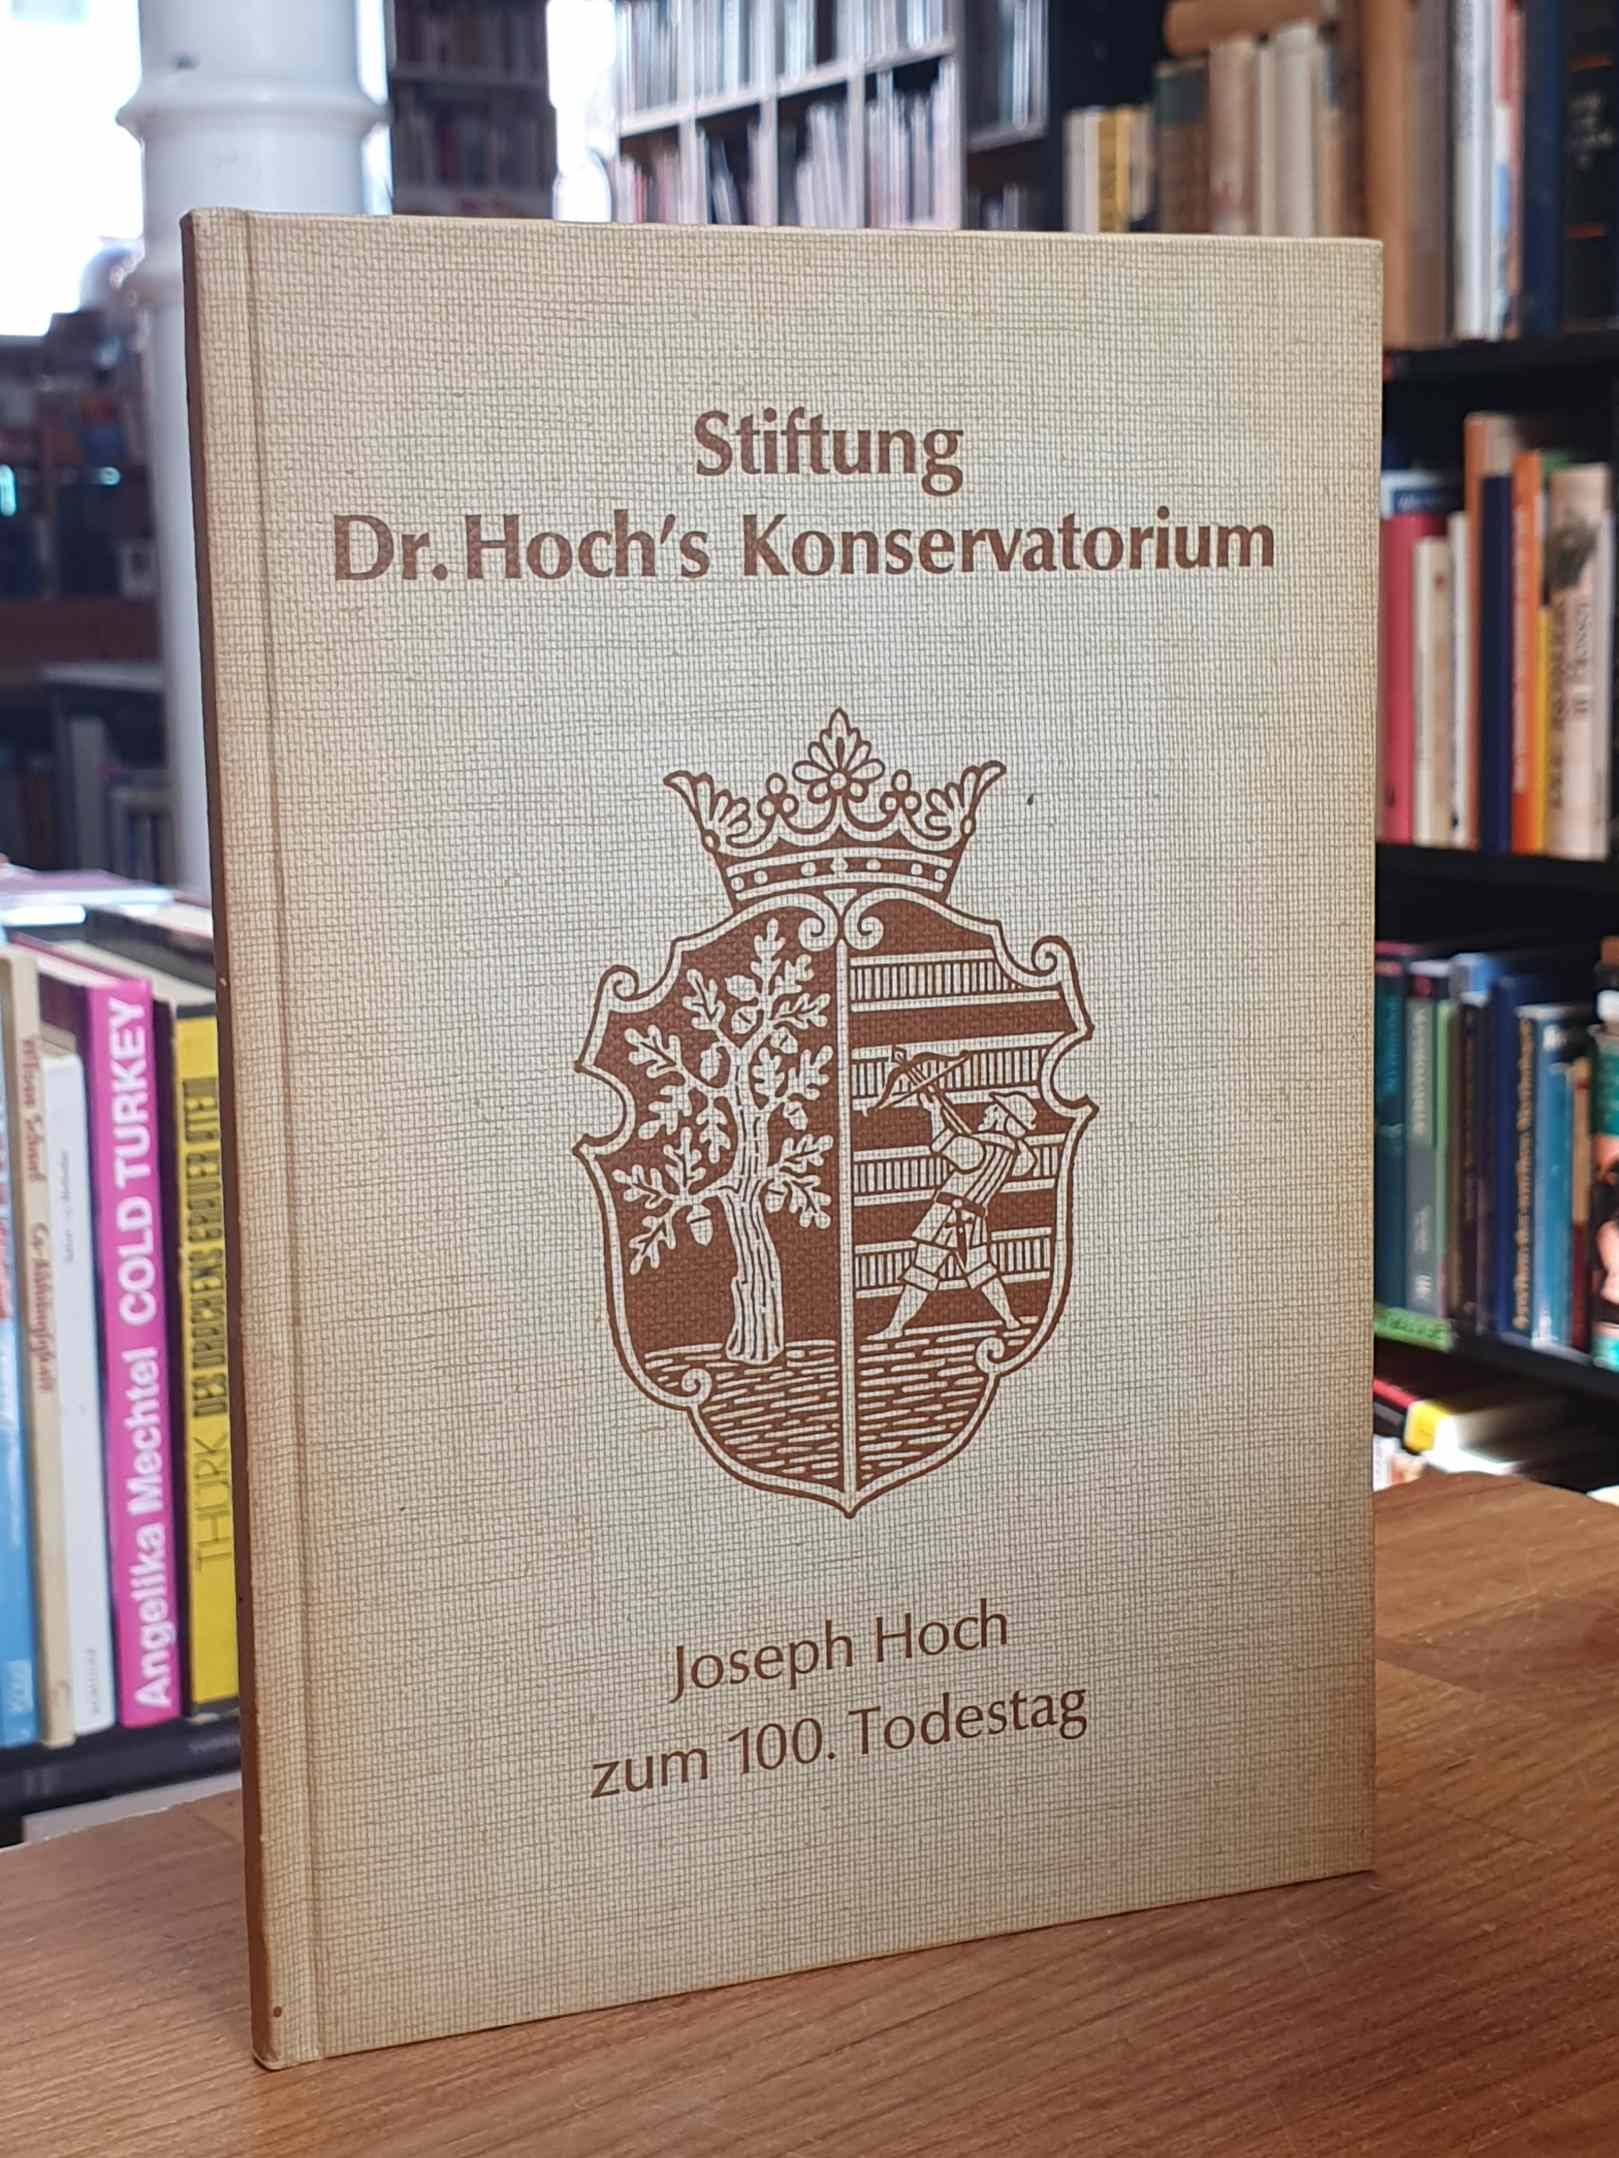 Dr. Hoch’s Konservatorium – Musikakademie Frankfurt am Main, Stiftung Dr Hoch’s